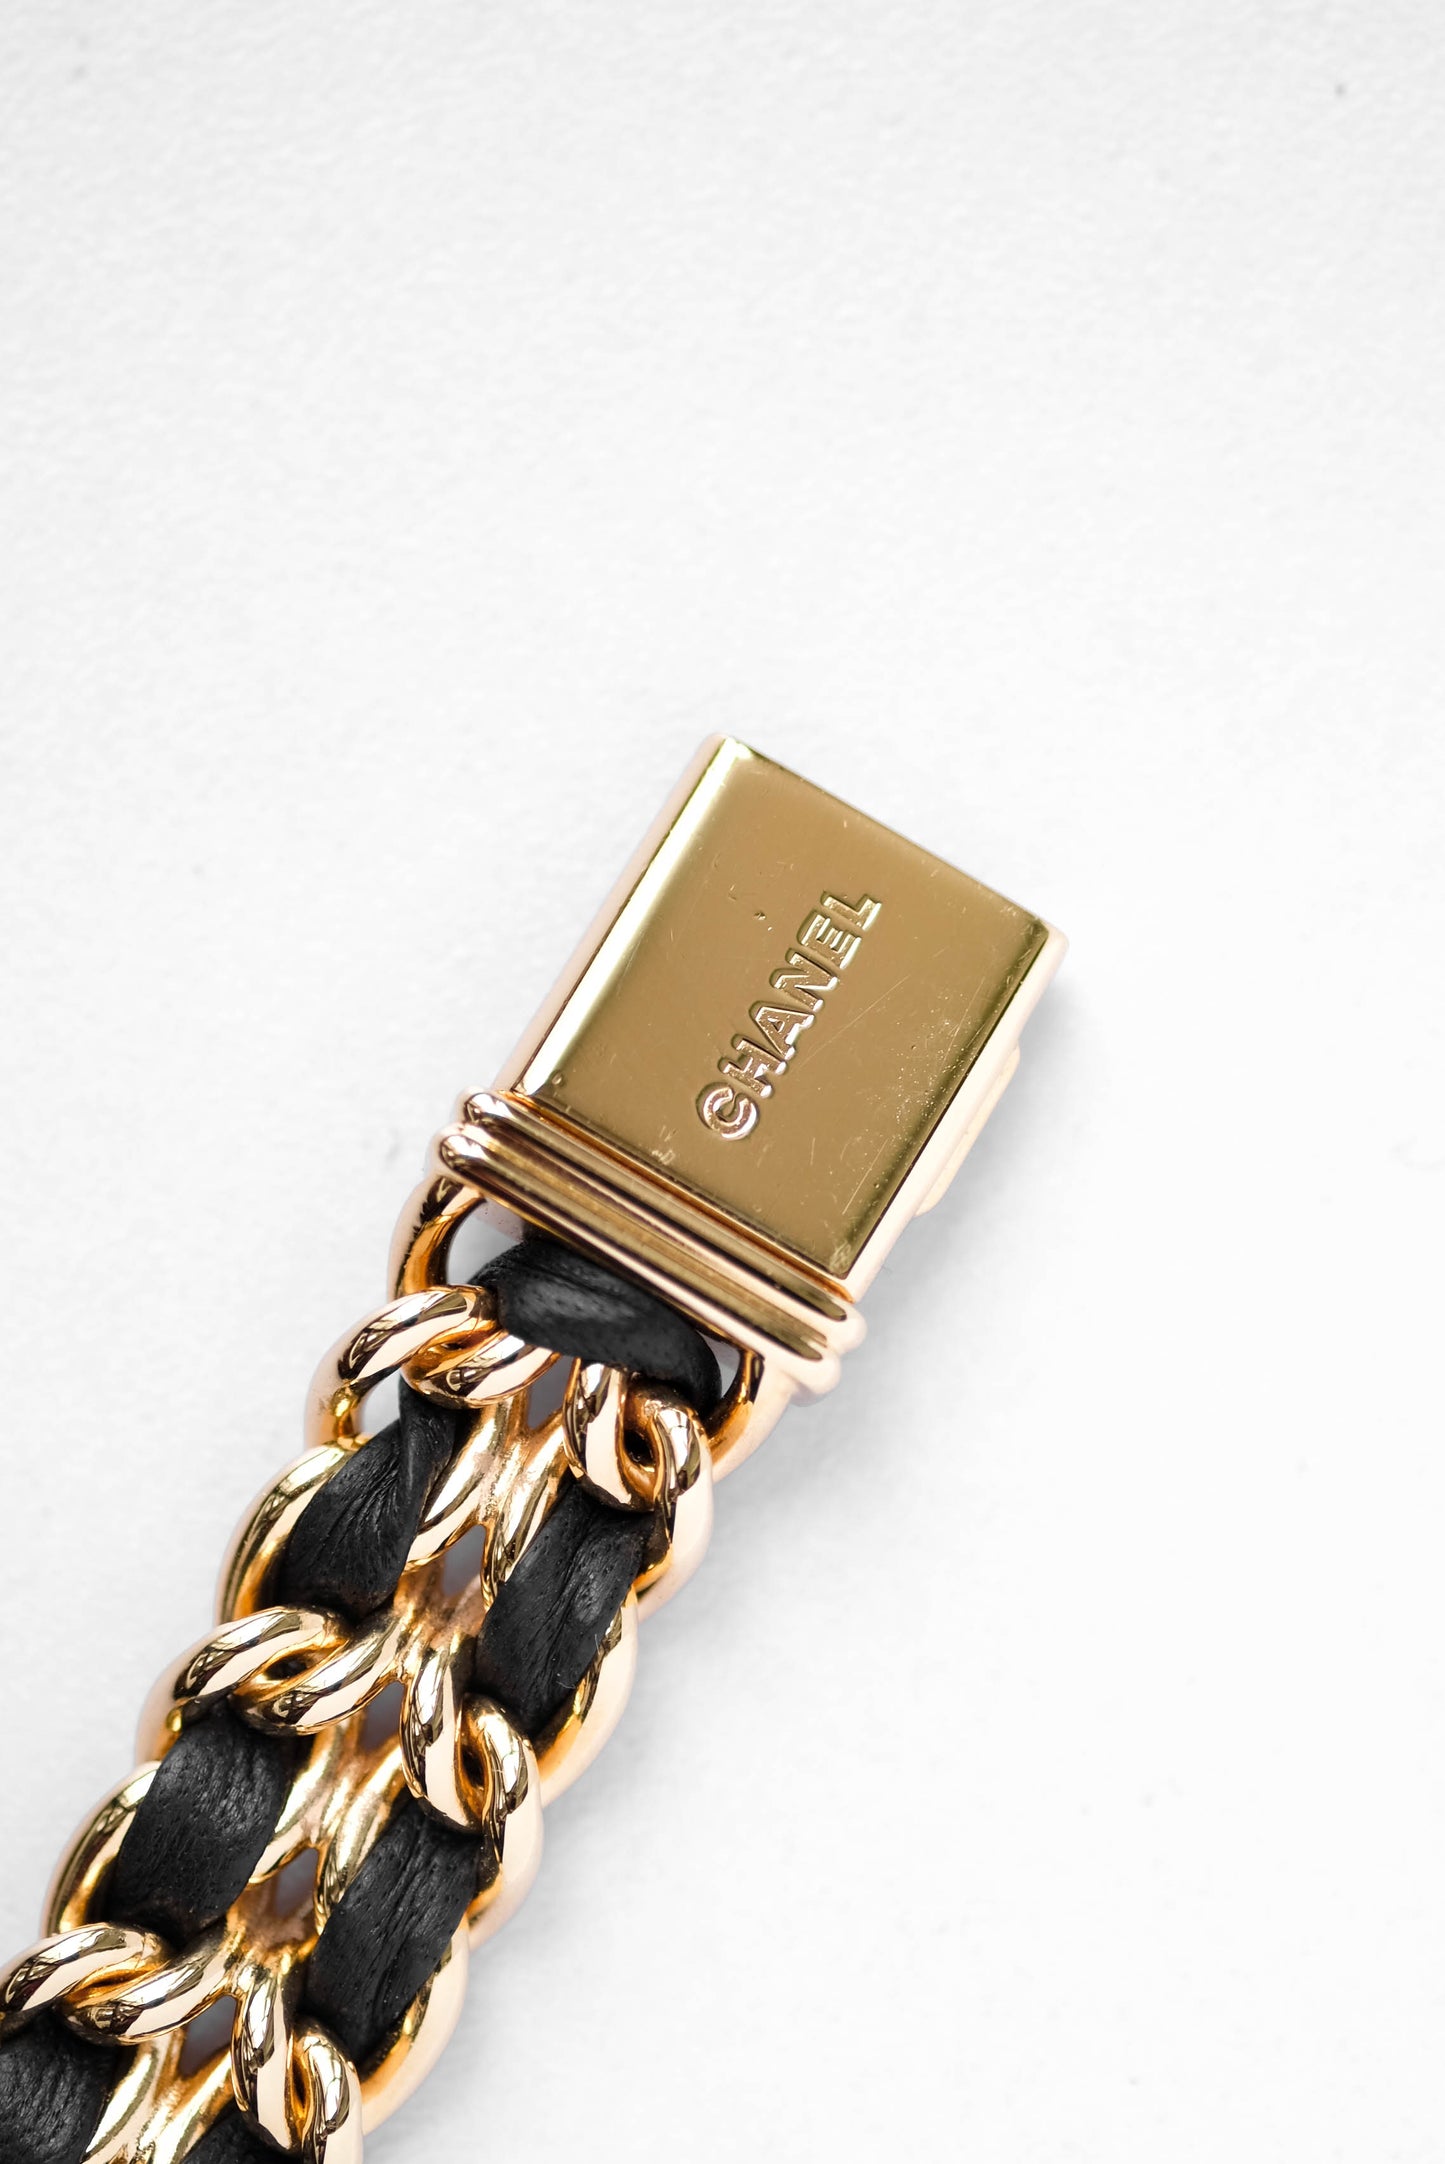 Chanel Première plaquée or & cuir